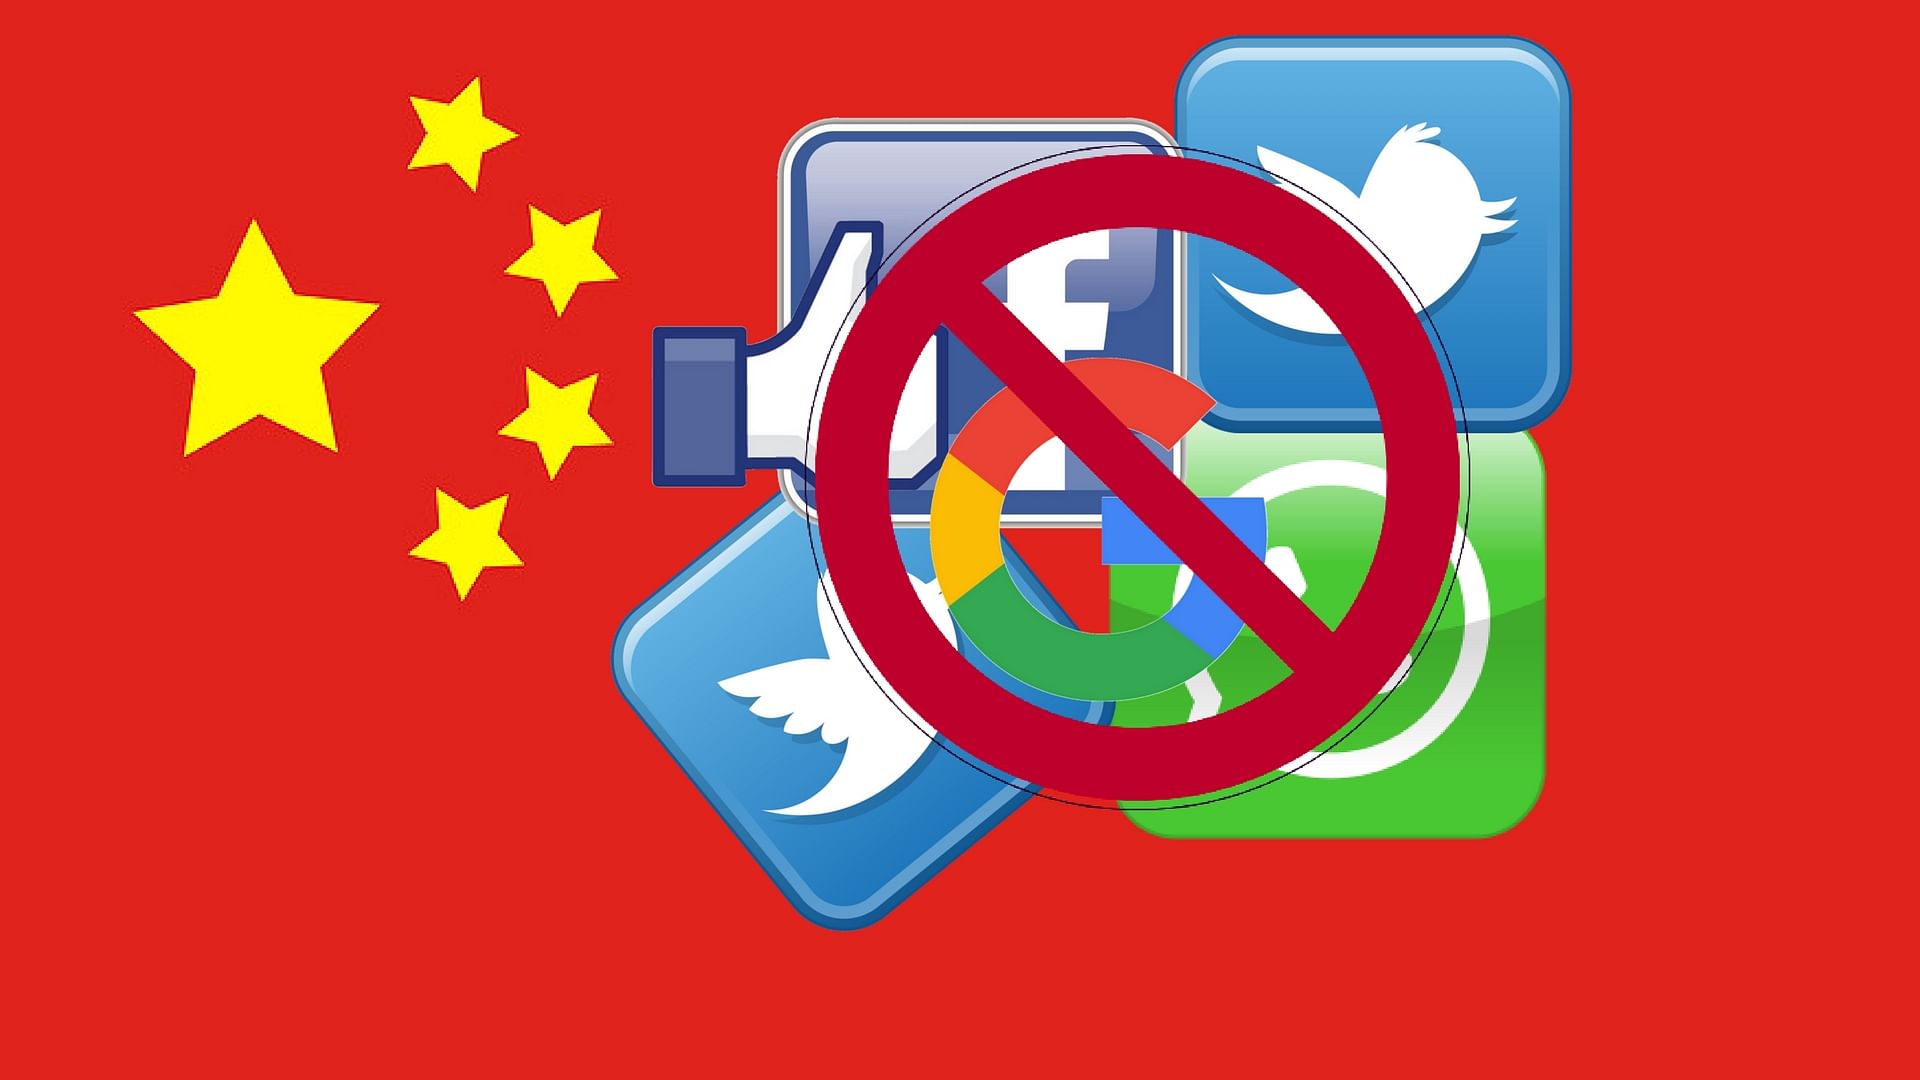 चीन के पास खुद का सोशल मीडिया साइट्स और सर्च इंजन है